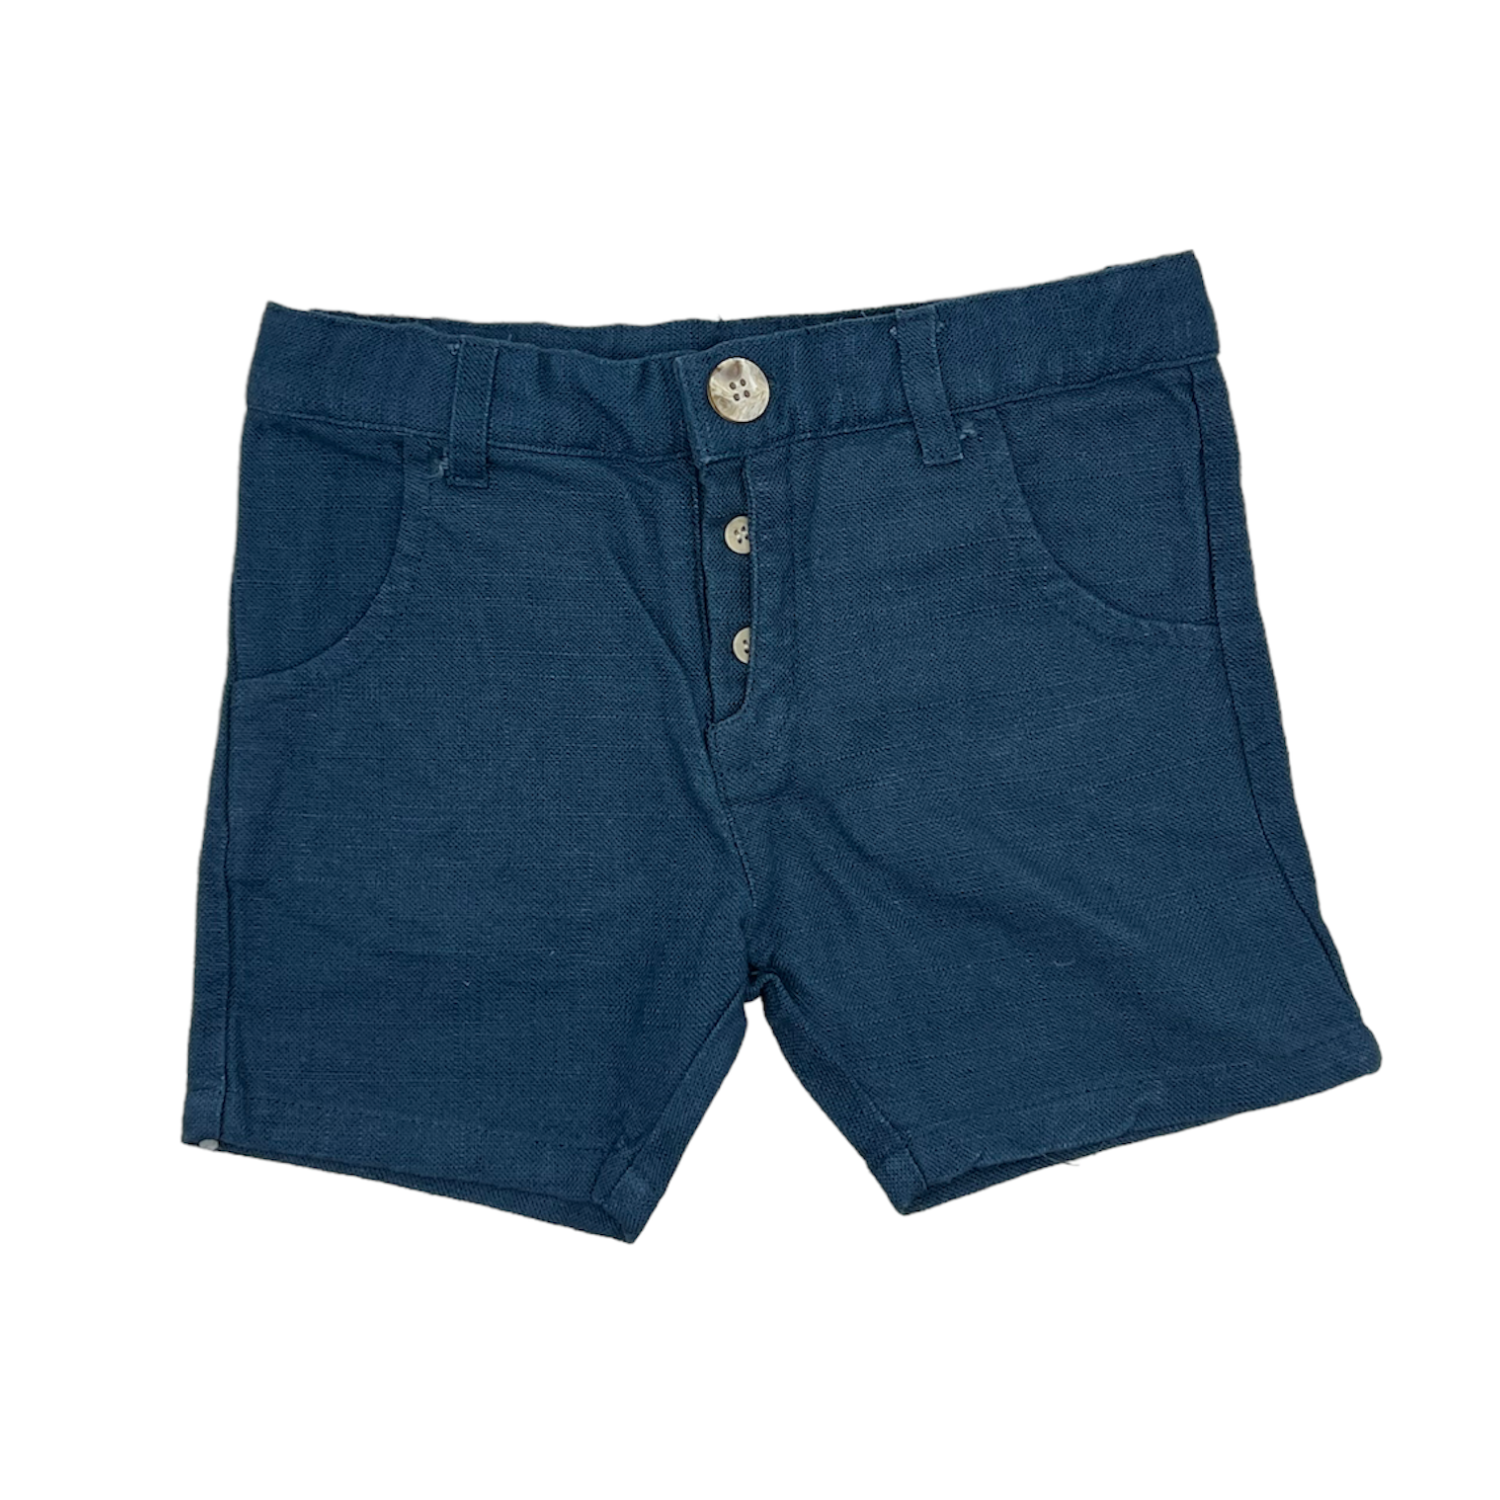 Crew Kids Linen Textured Shorts - Blue